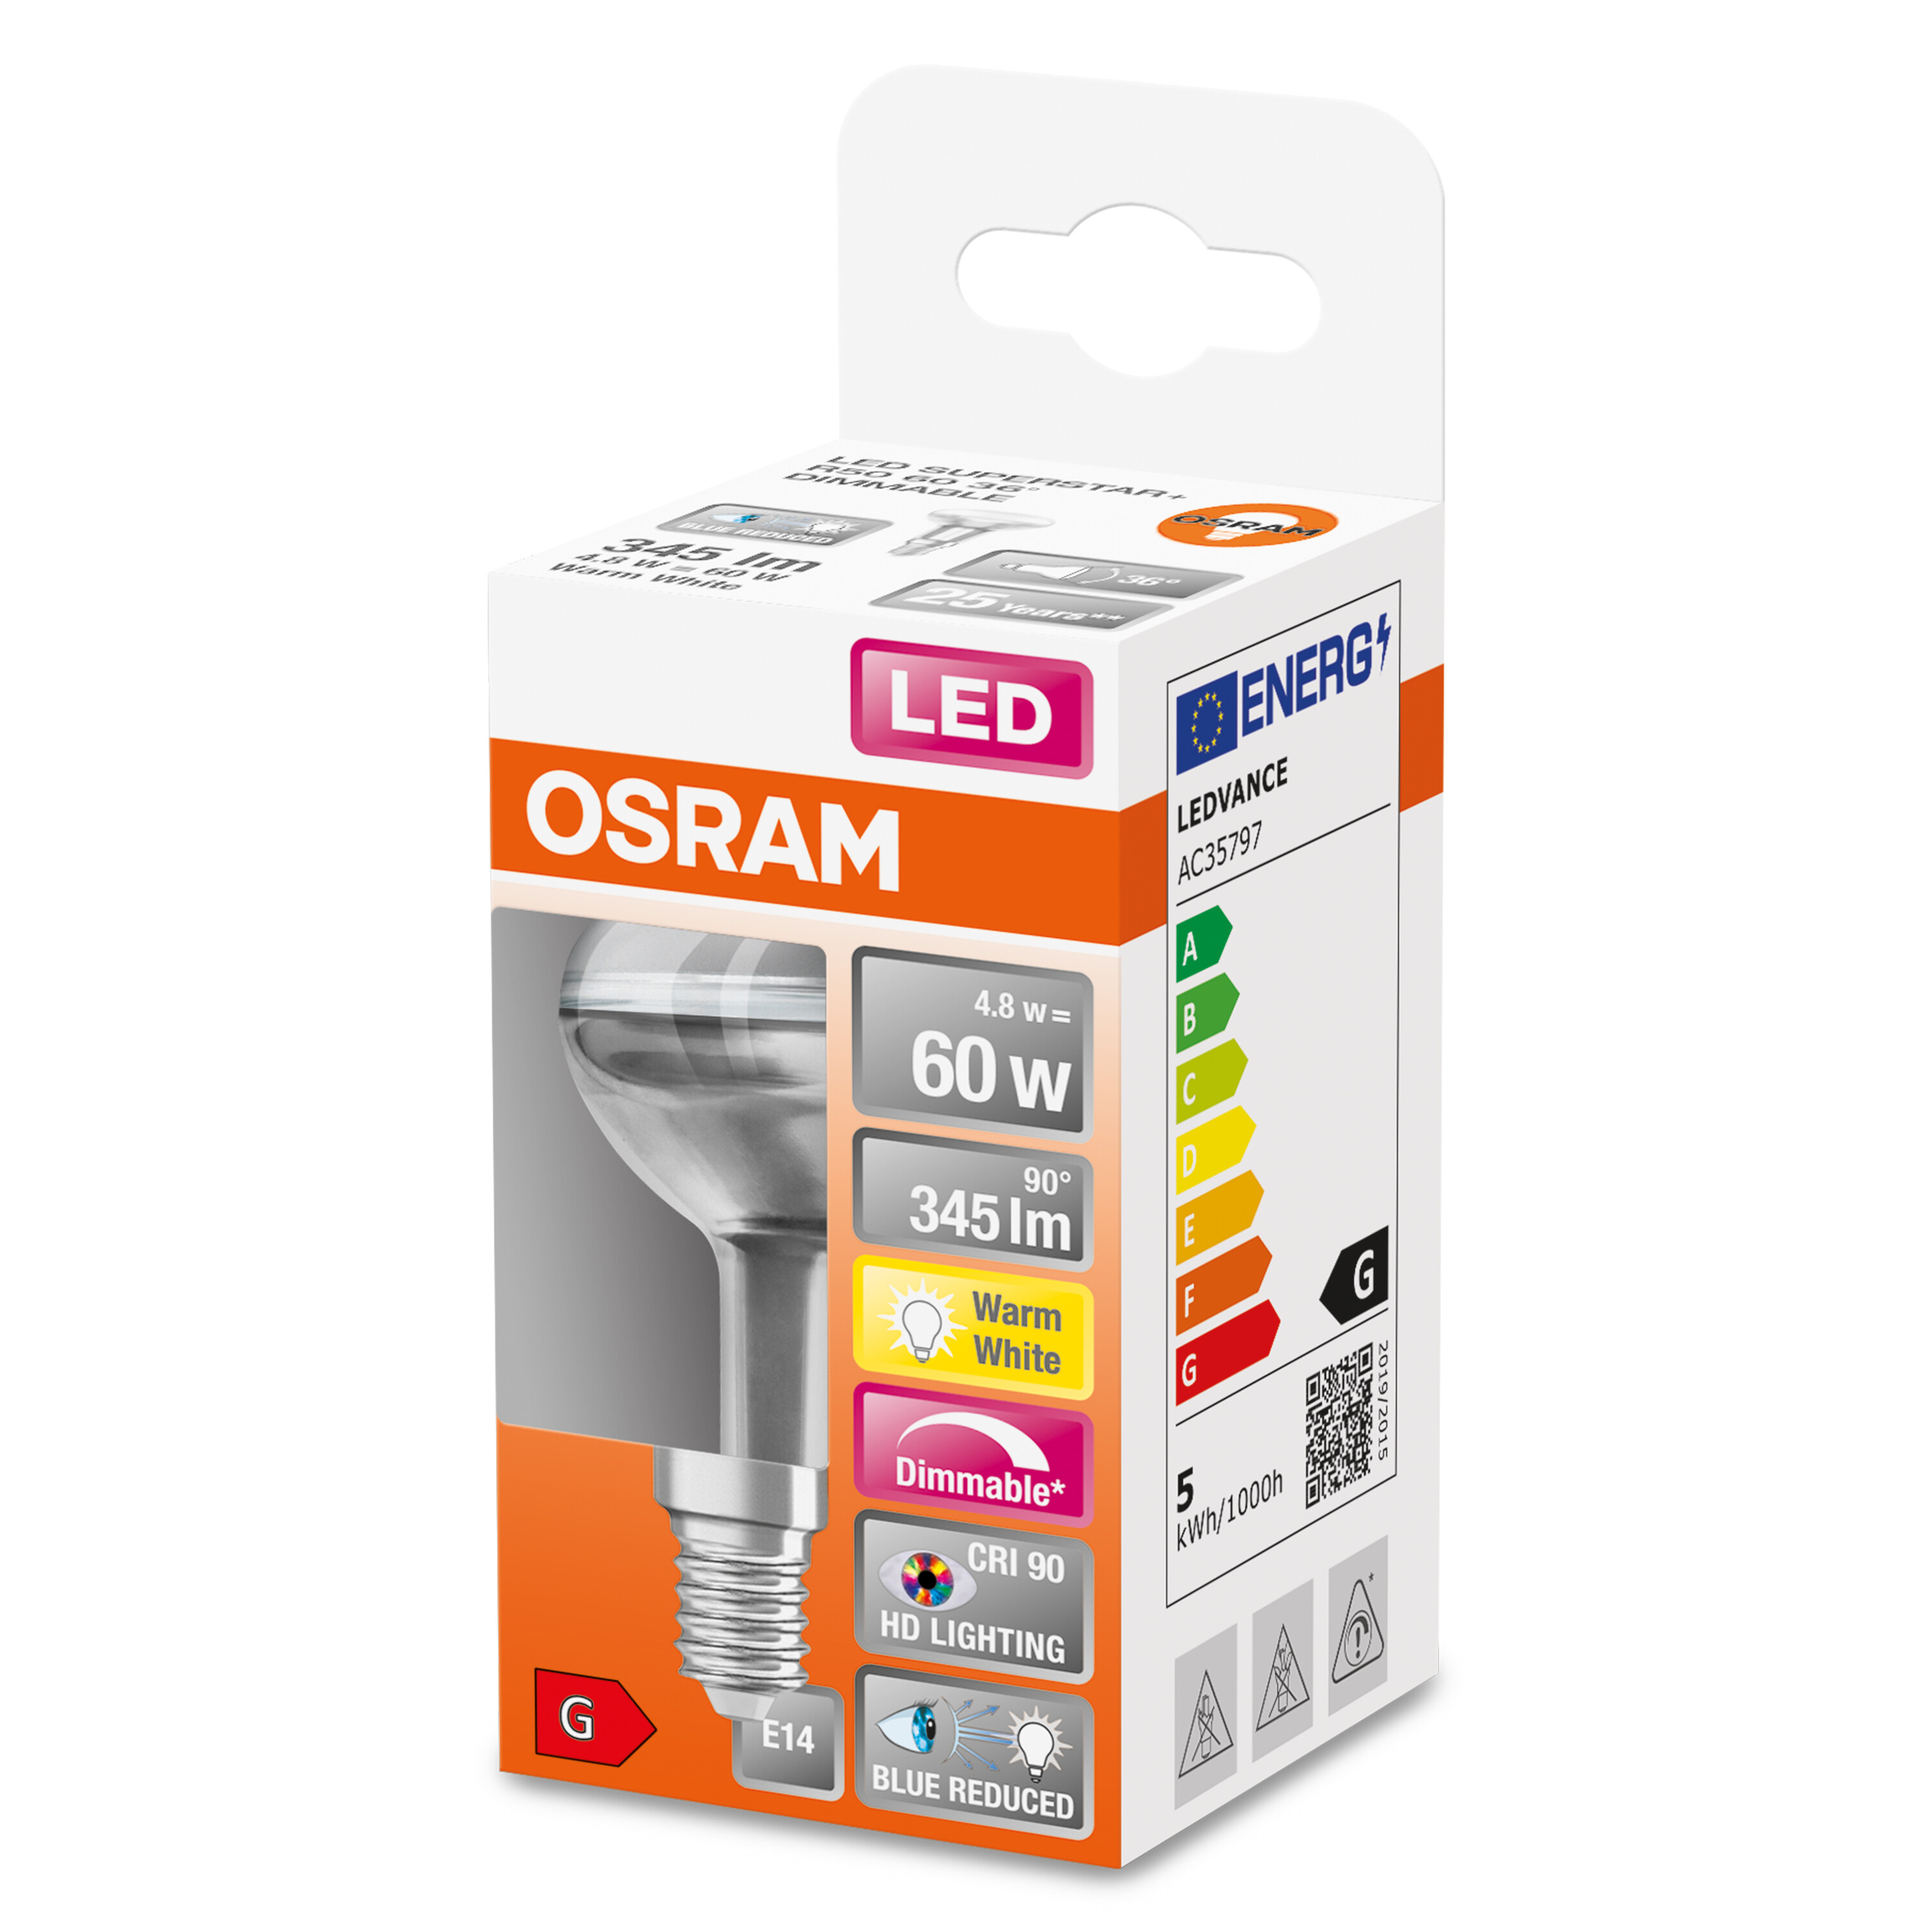 OSRAM  LED SUPERSTAR PLUS R50 Reflektor-Lampe Lumen Warmweiß LED 345